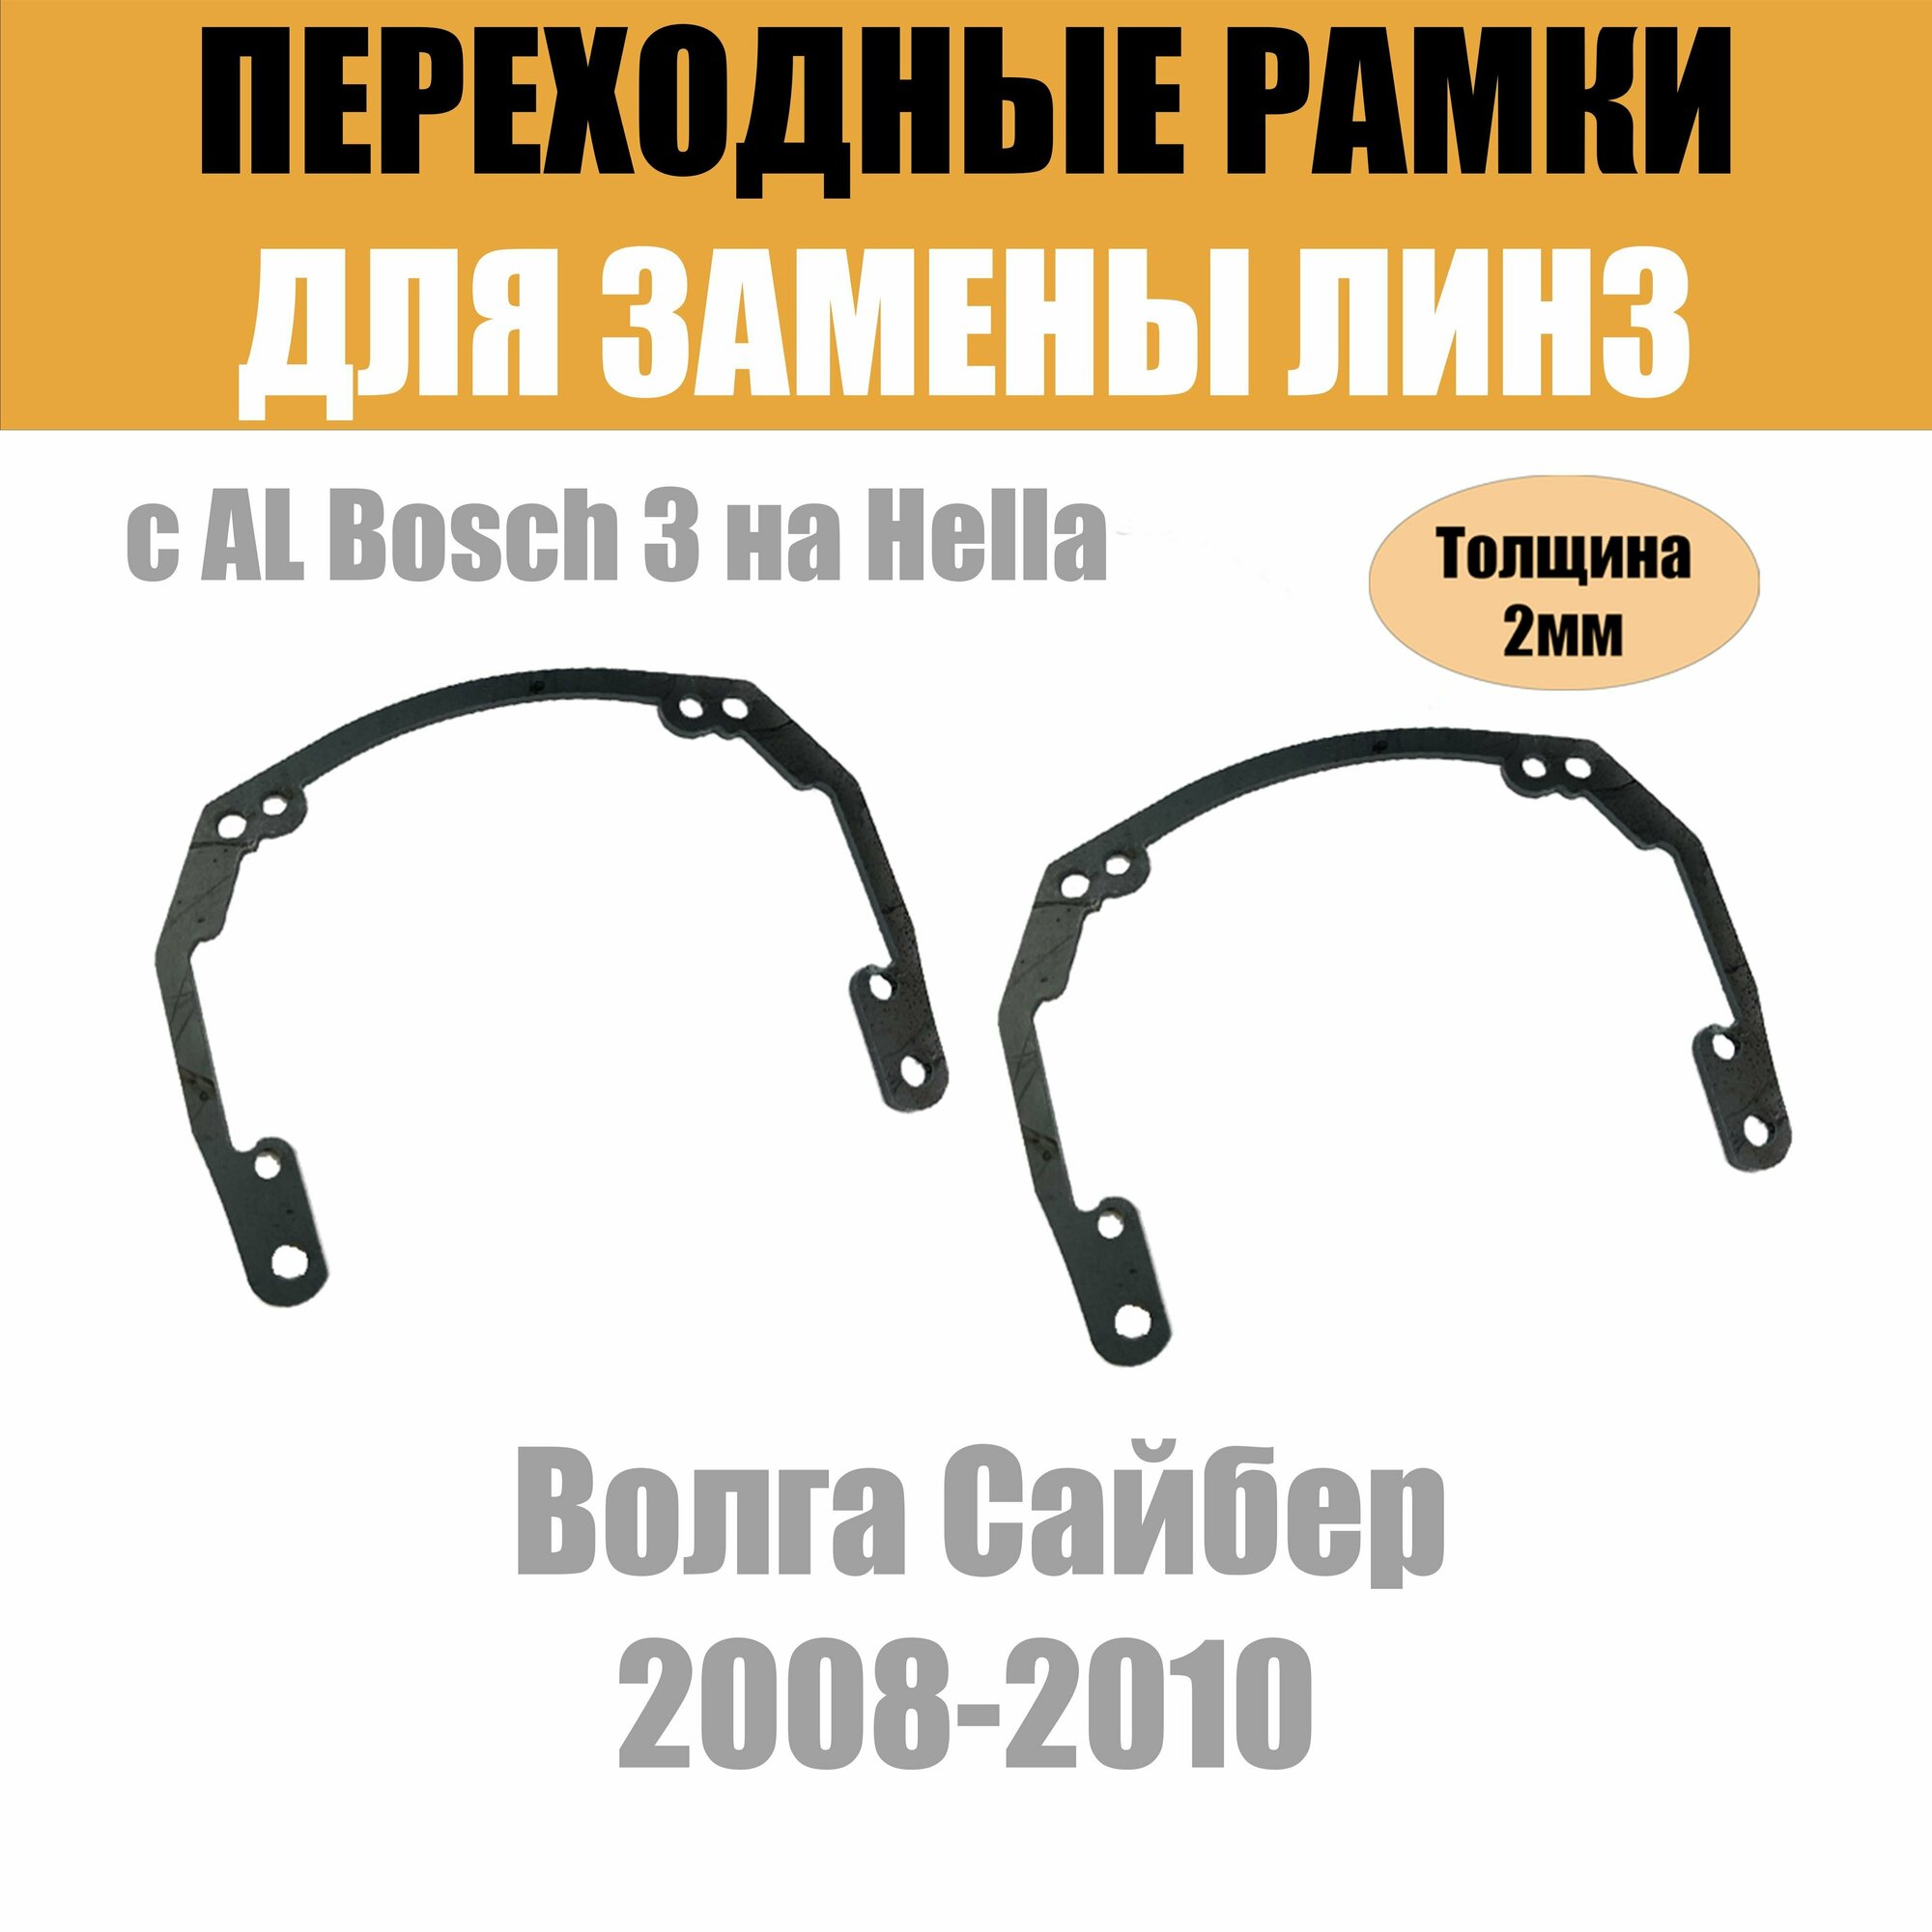 Переходные рамки для линз на Волга Сайбер 2008-2010 под модуль Hella 3R/Hella 3 (Комплект, 2шт)